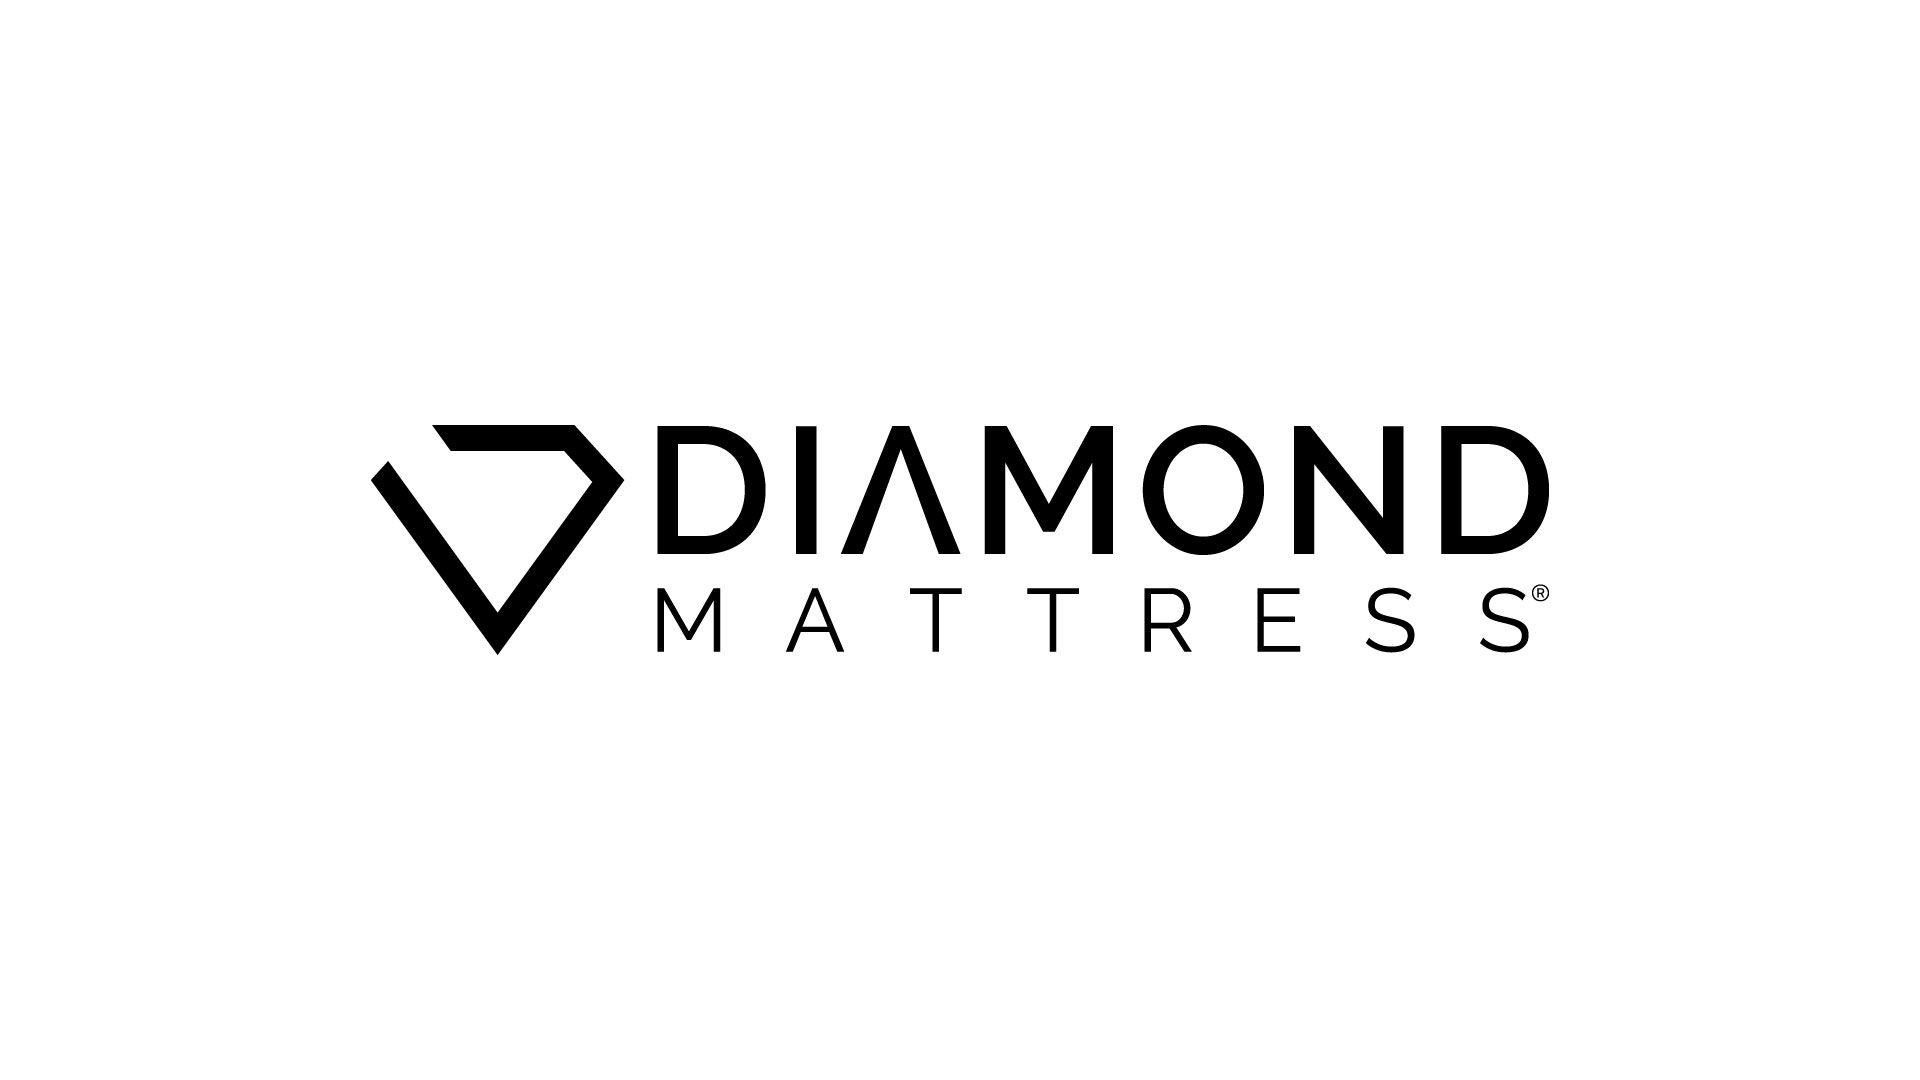 Mattress Logo - Chattam & Wells Hamilton Luxury Firm